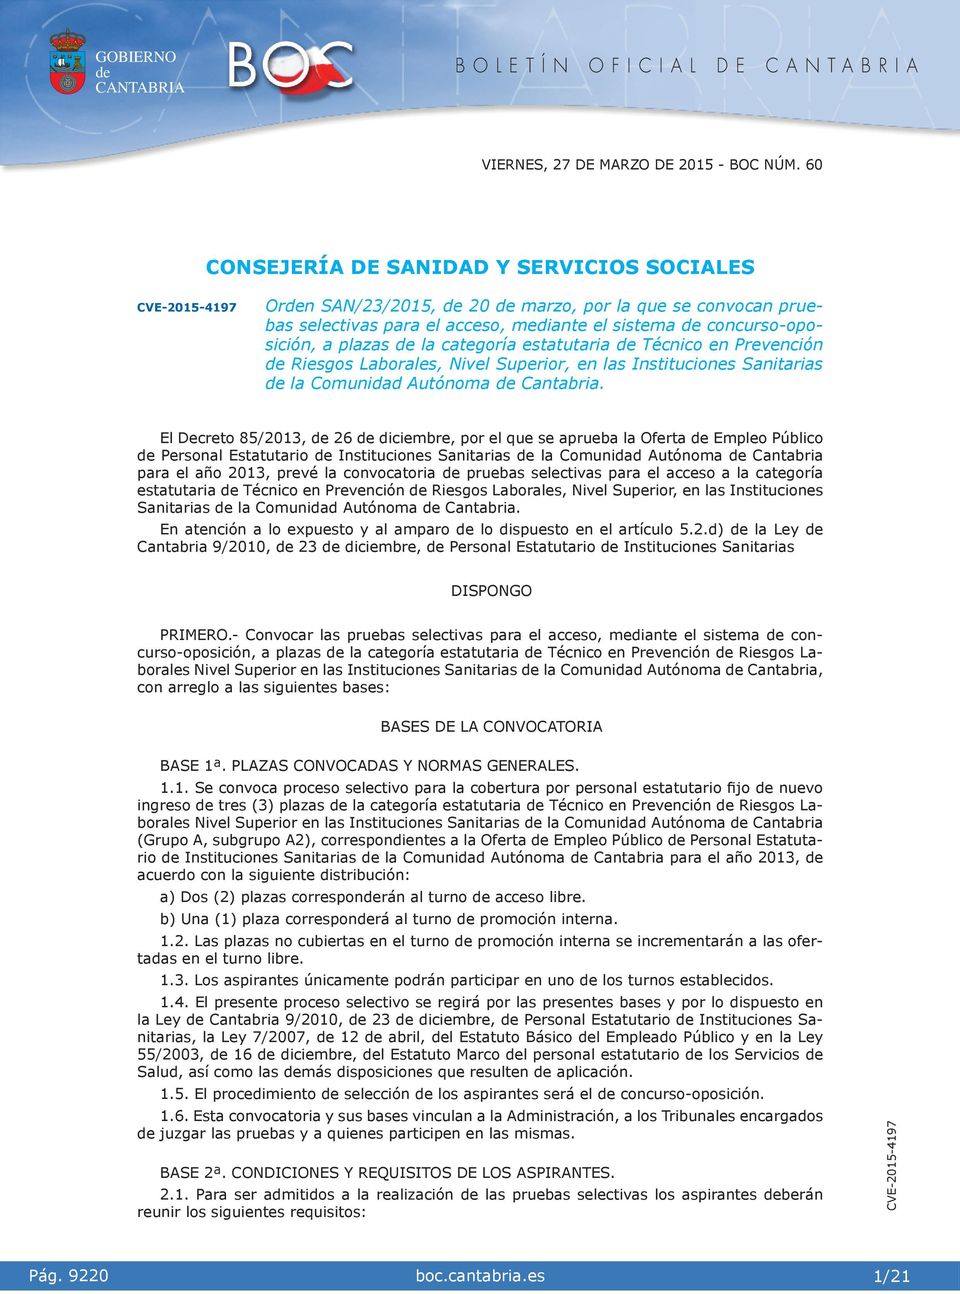 El Decreto 85/2013, 26 dcembre, por el que se aprueba la Oferta Empleo Públco Personal Estatutaro Insttucones Santaras la Comundad Autónoma Cantabra para el año 2013, prevé la convocatora pruebas